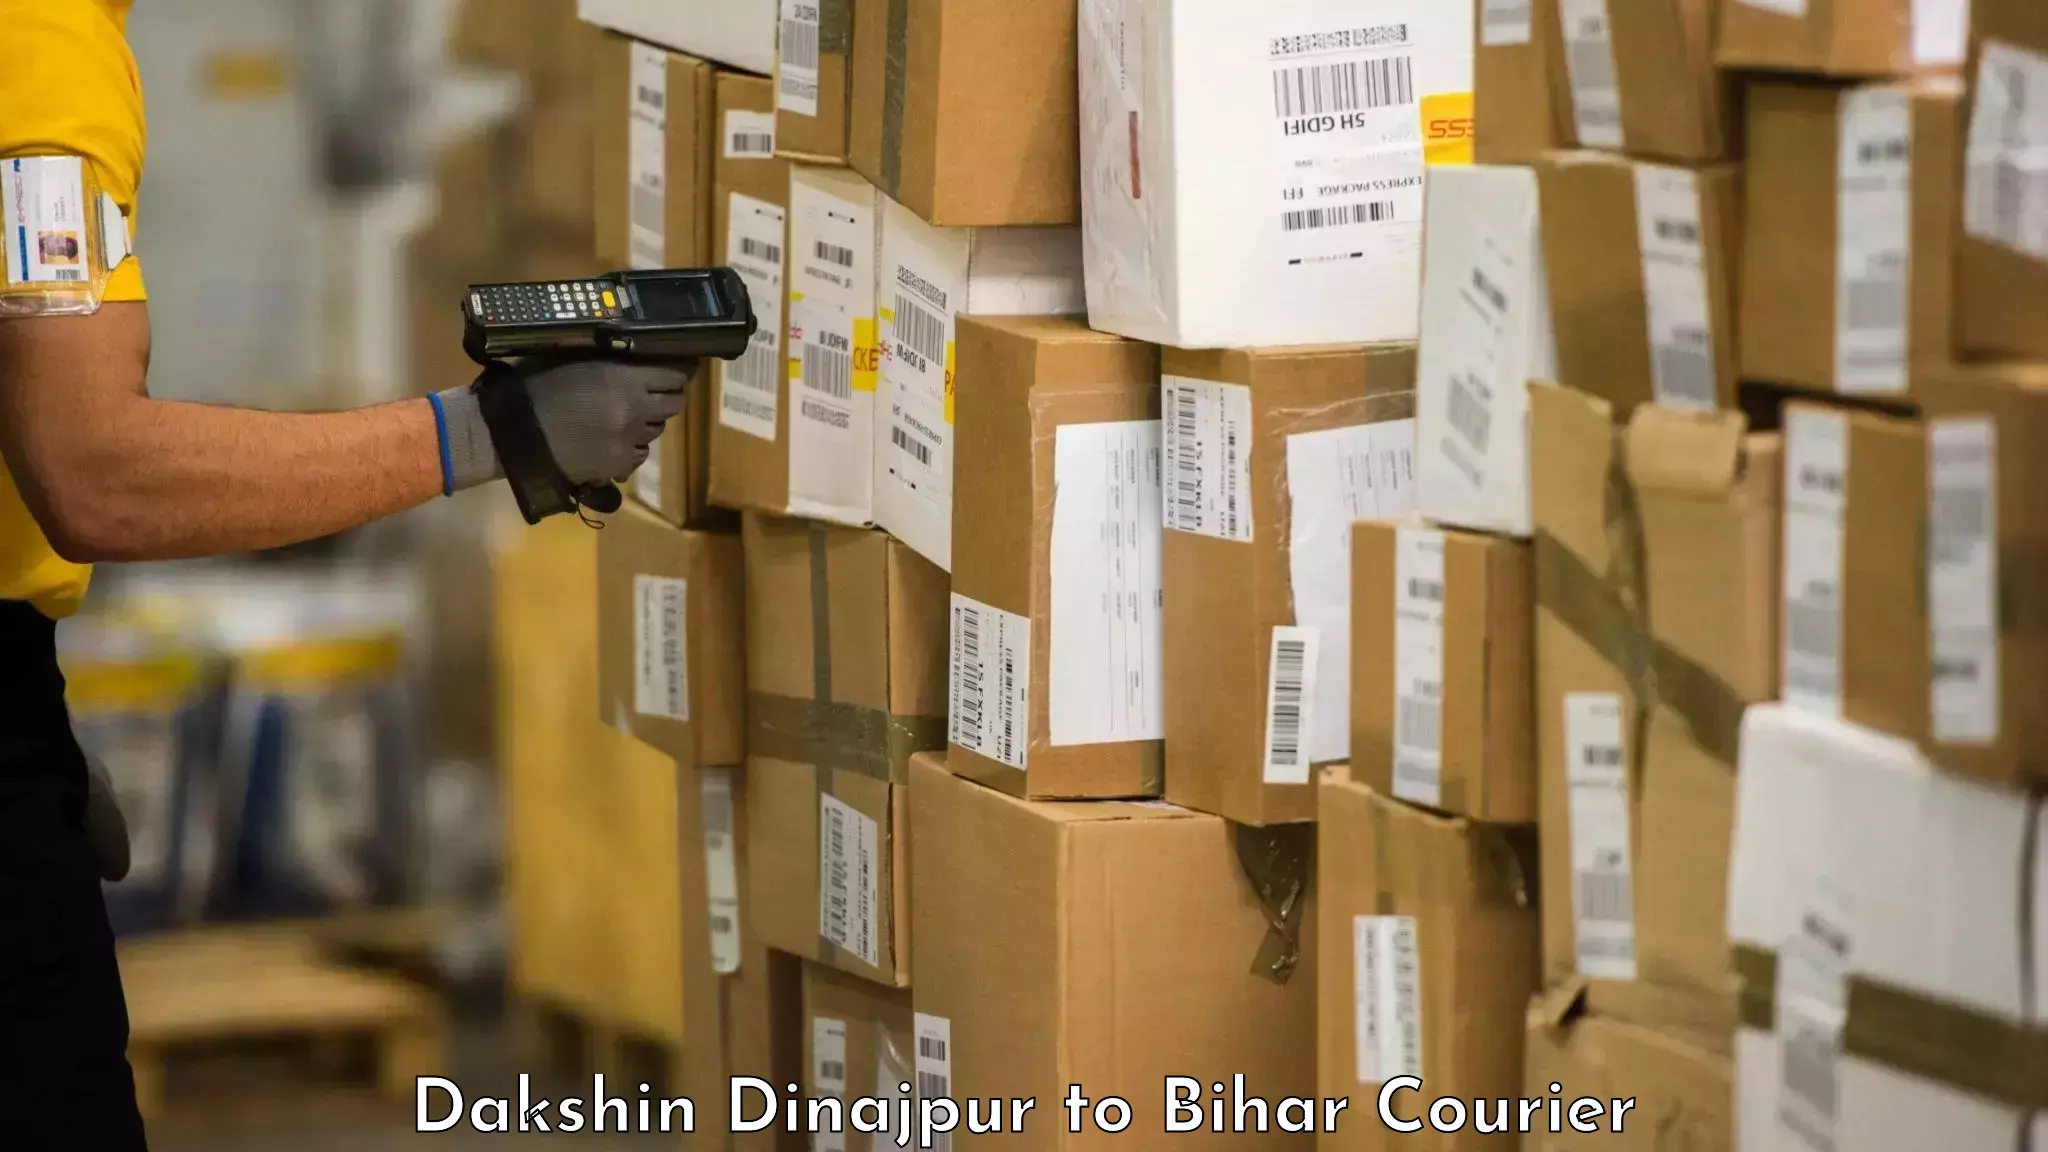 Luggage delivery solutions Dakshin Dinajpur to Mahnar Bazar